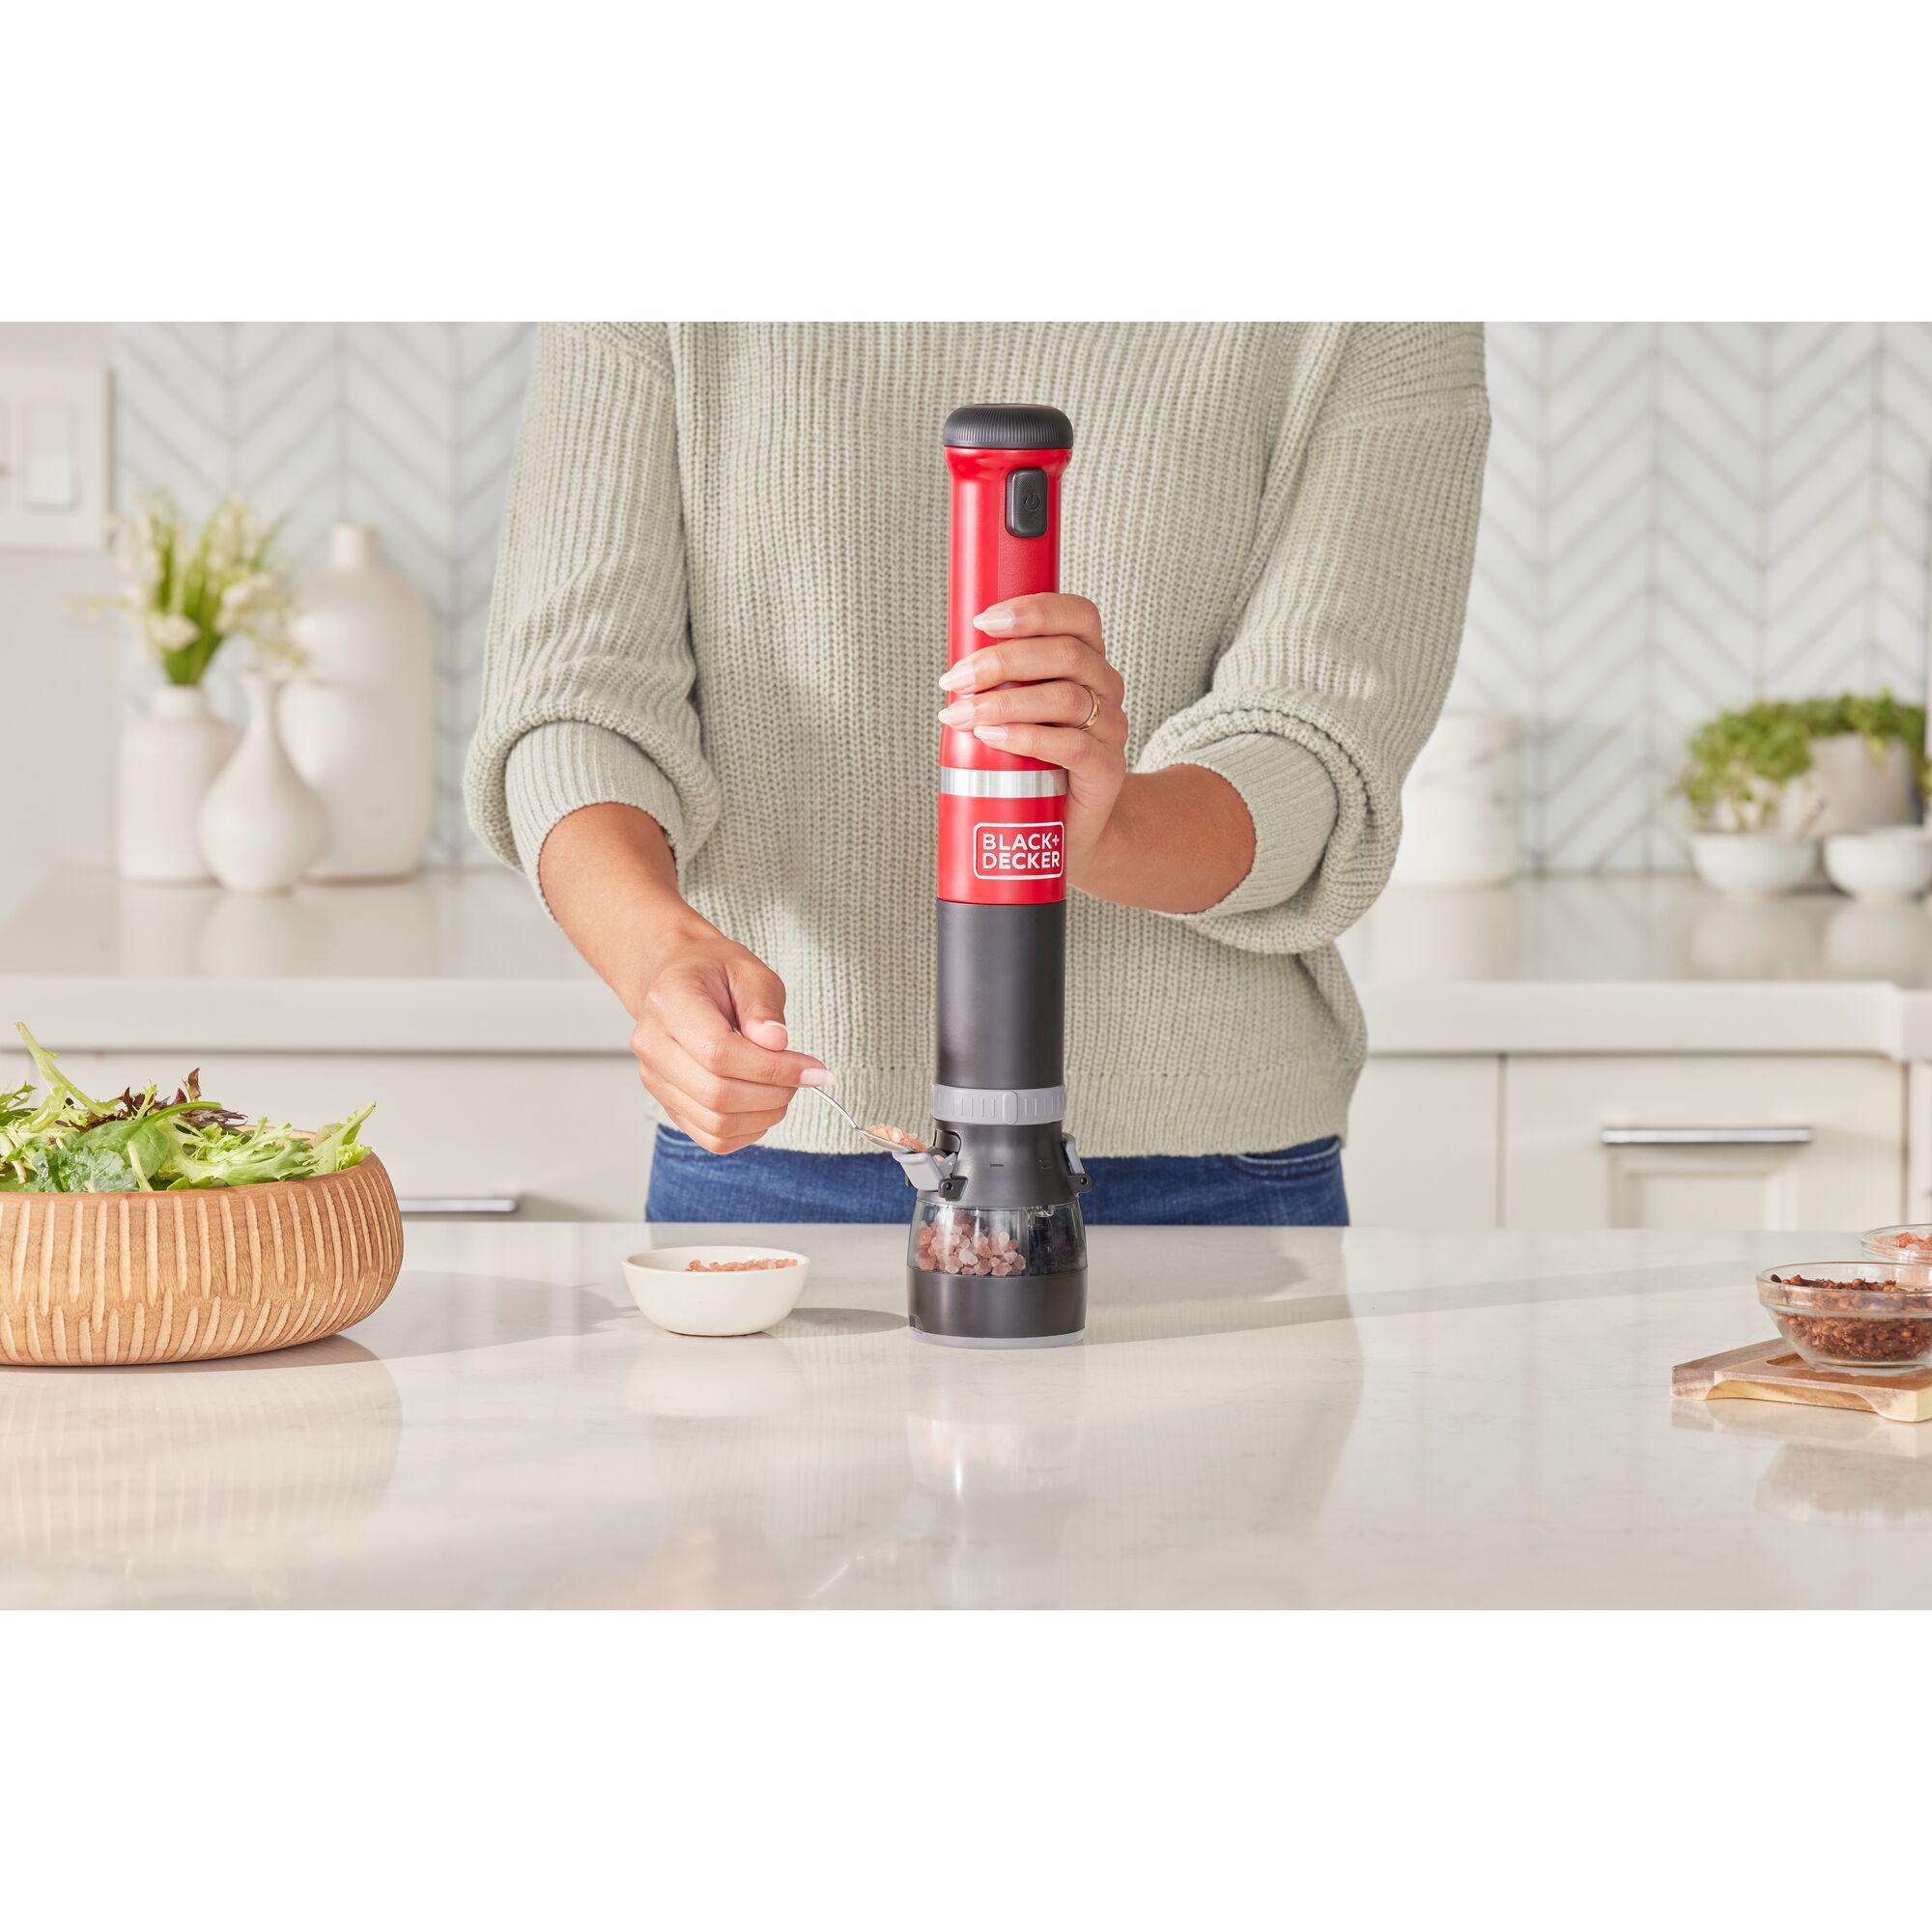 Talent adding salt crystals to the red BLACK+DECKER kitchen wand spice grinder attachment